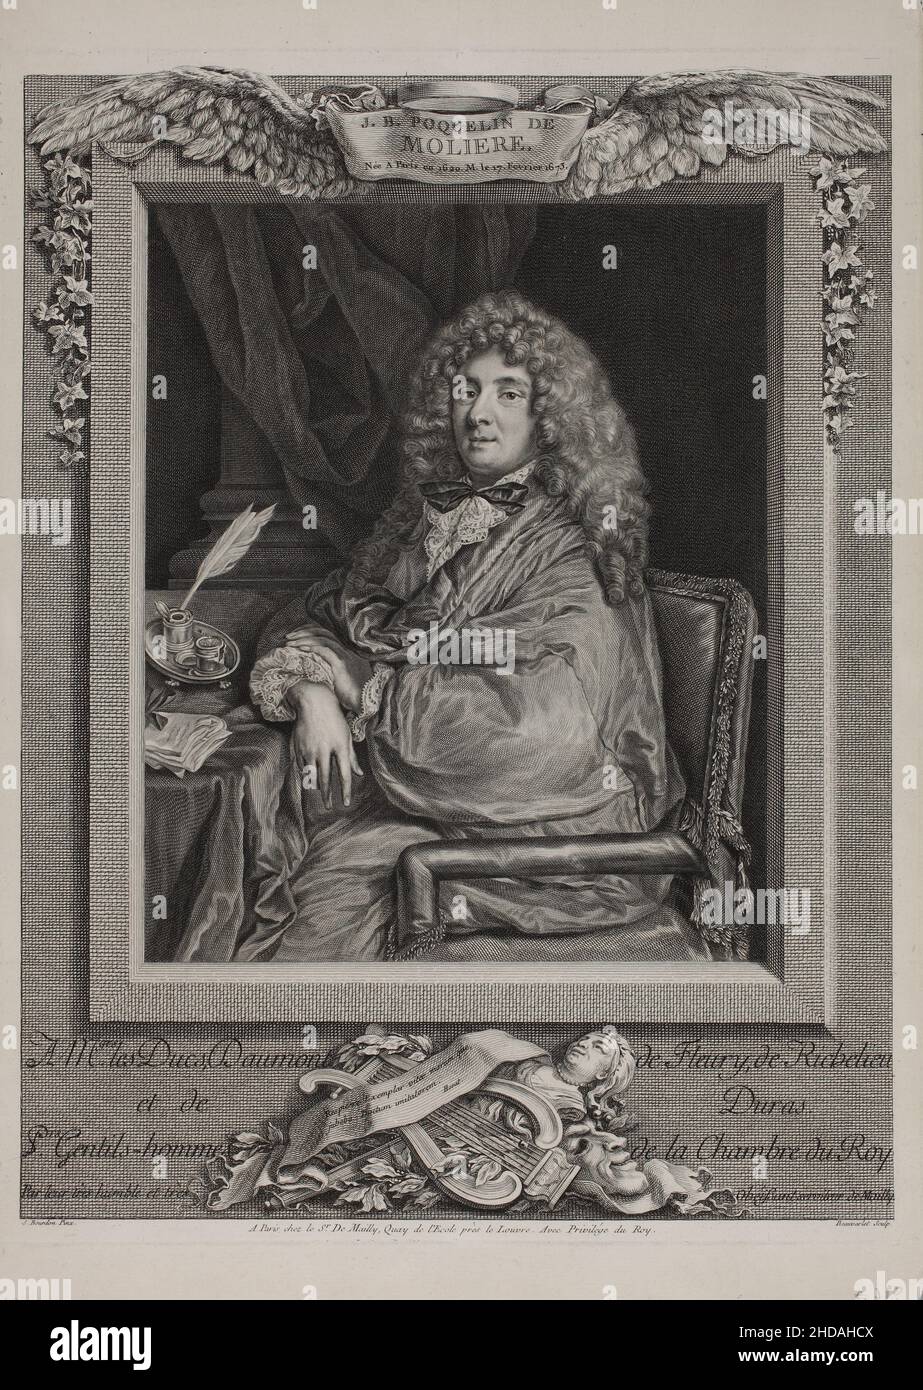 Porträt von Molière. 1774 Jean-Baptiste Poquelin (1622 – 1673), bekannt unter seinem Künstlernamen Molière, war ein französischer Dramatiker, Schauspieler und Dichter, weithin rega Stockfoto